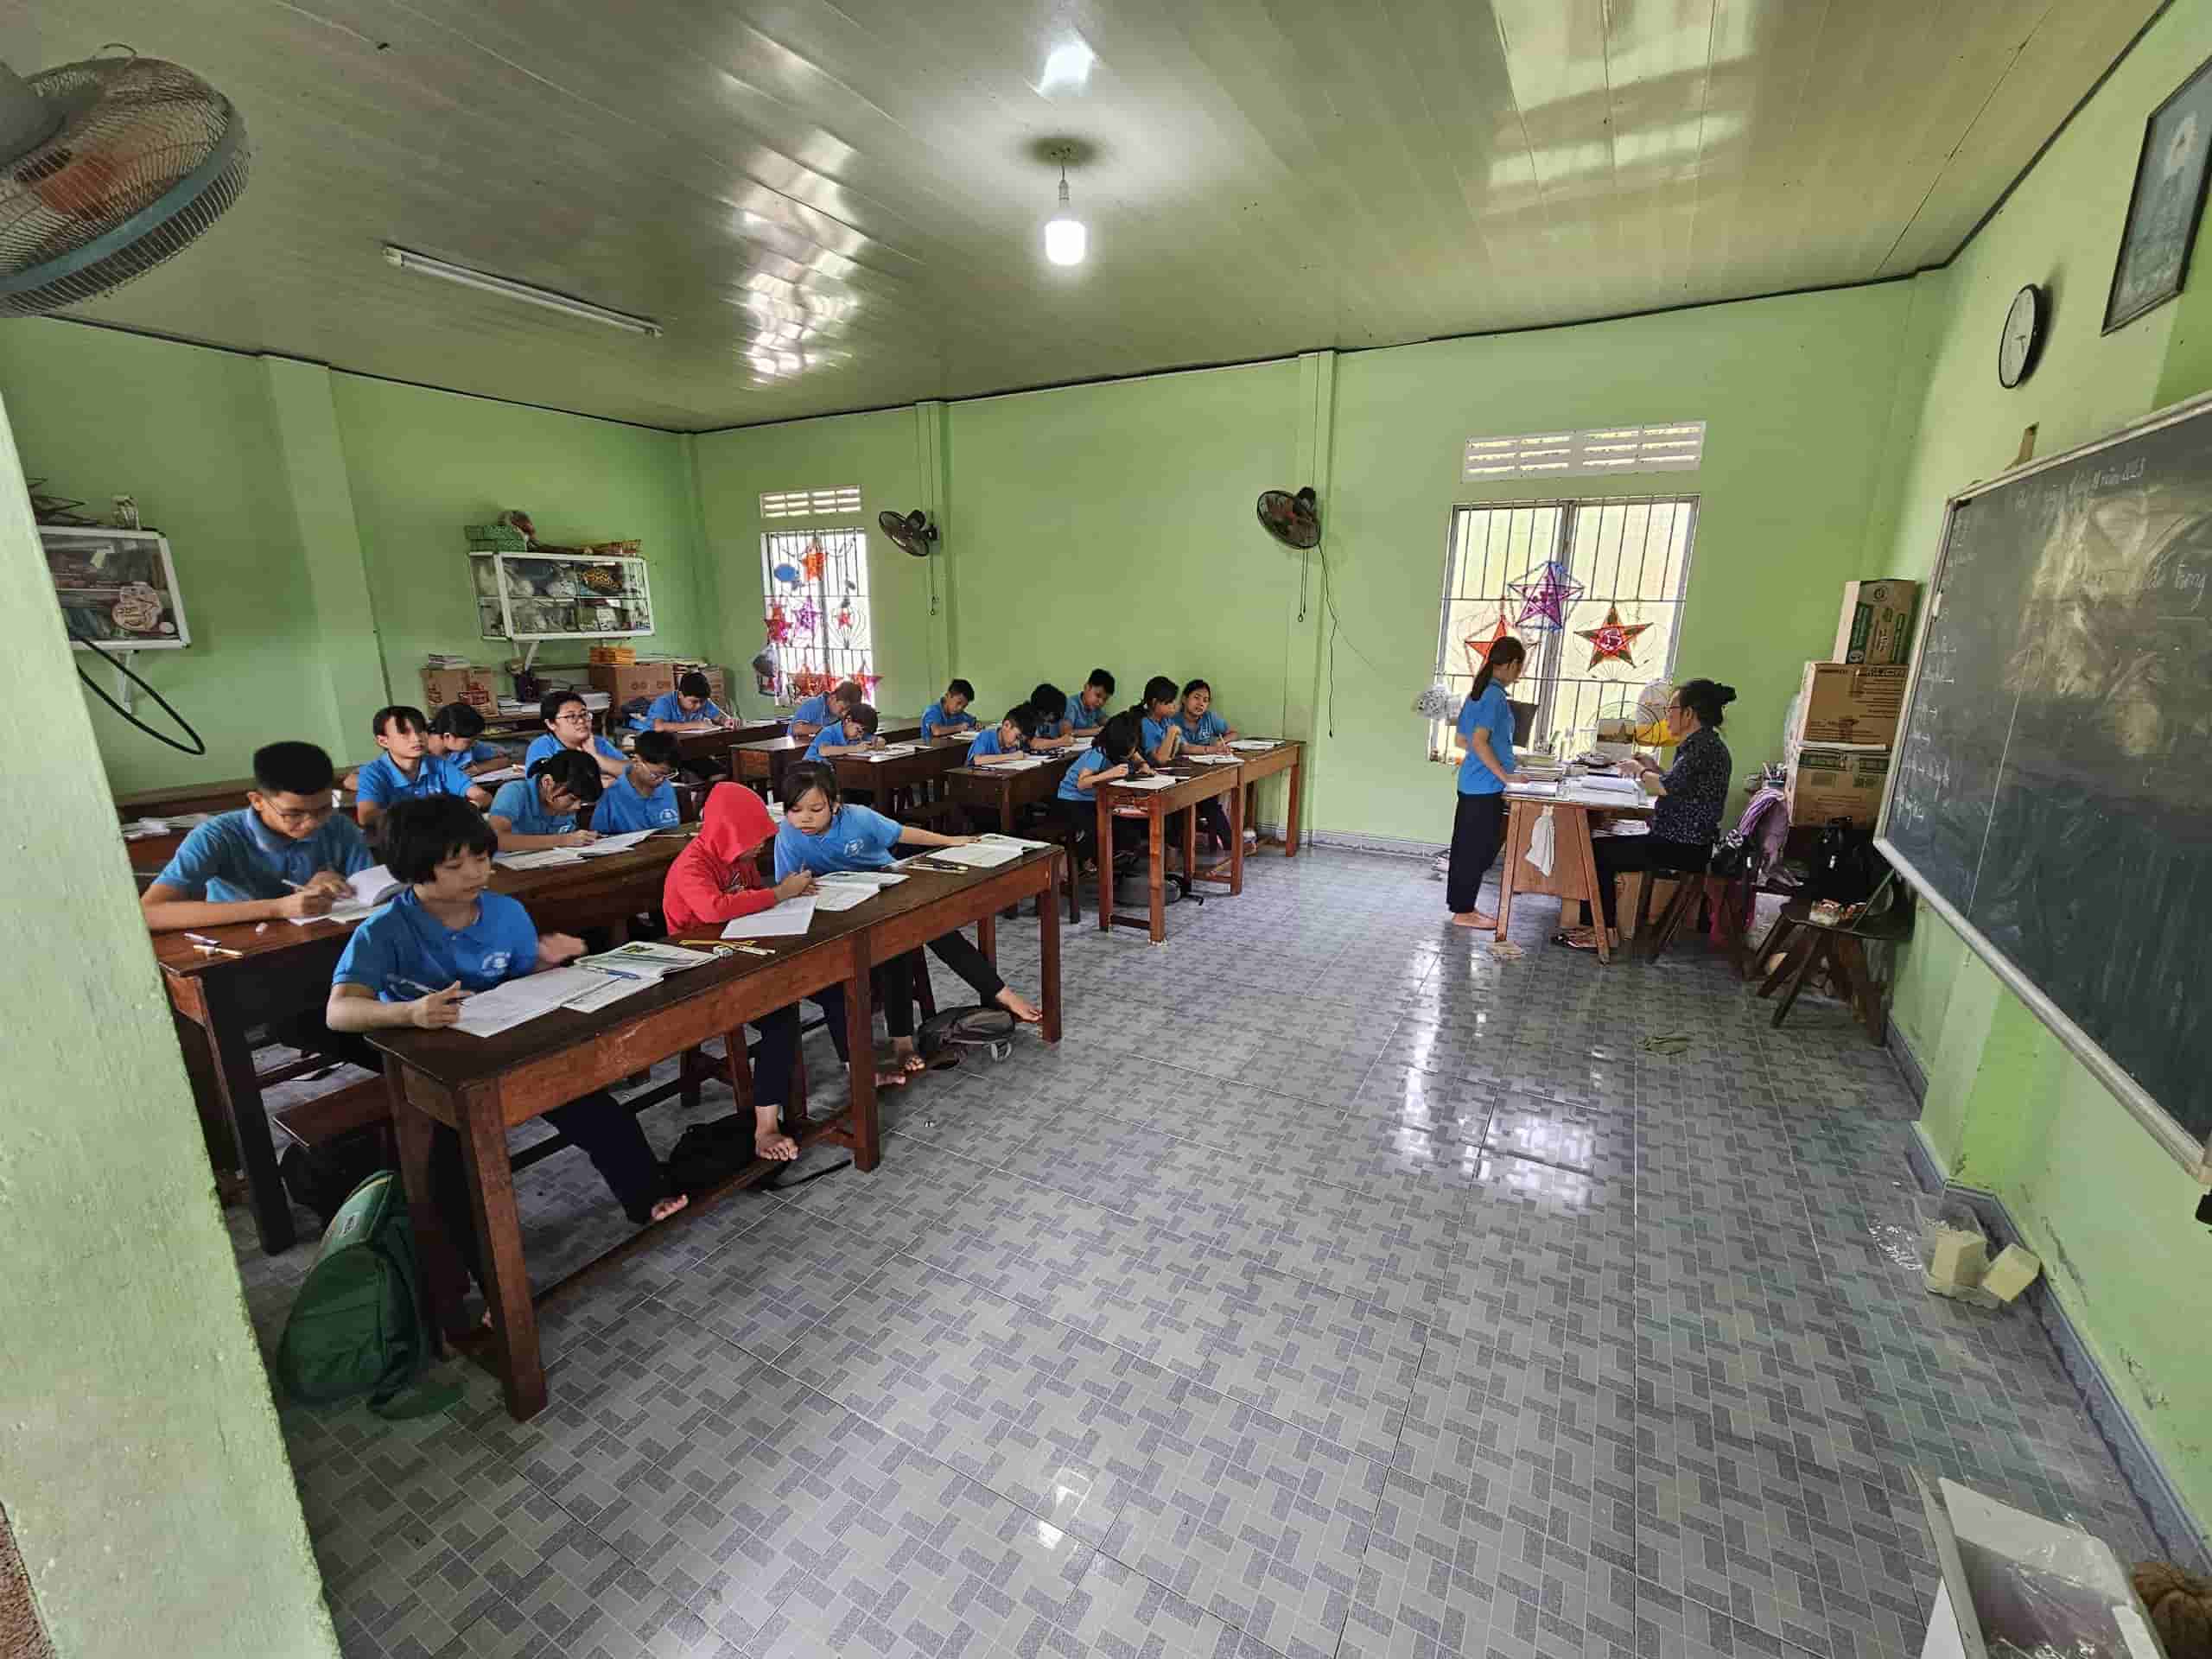 Lớp học ở chùa Lộc Thọ đã giúp nhiều em nhỏ khó khăn, cơ nhỡ theo đuổi chương trình học chính quy của Bộ GDĐT. Ảnh: Hữu Long